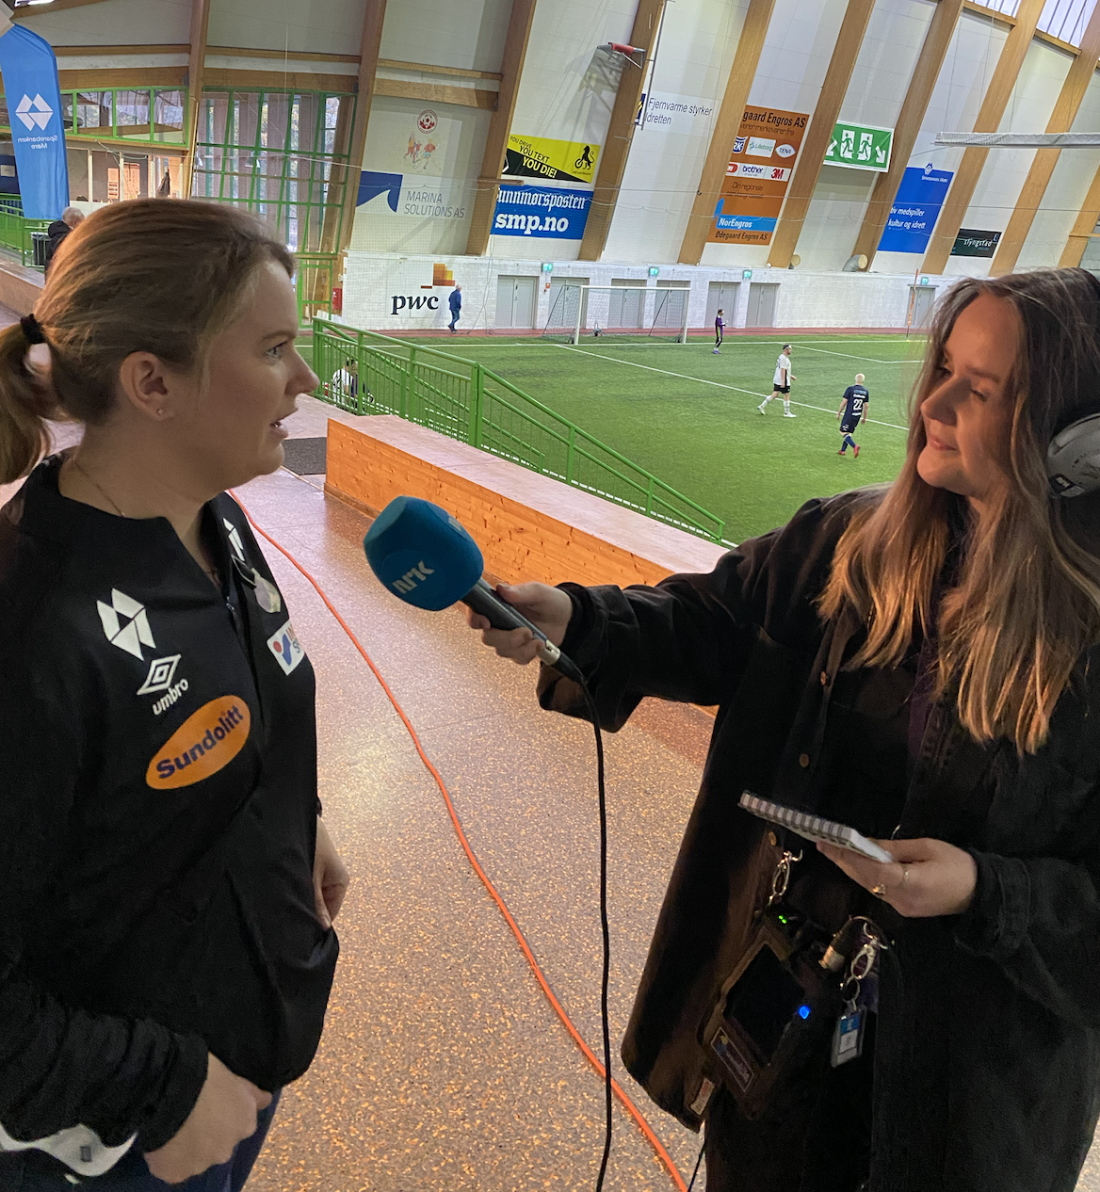 Kristin intervju NRK.png